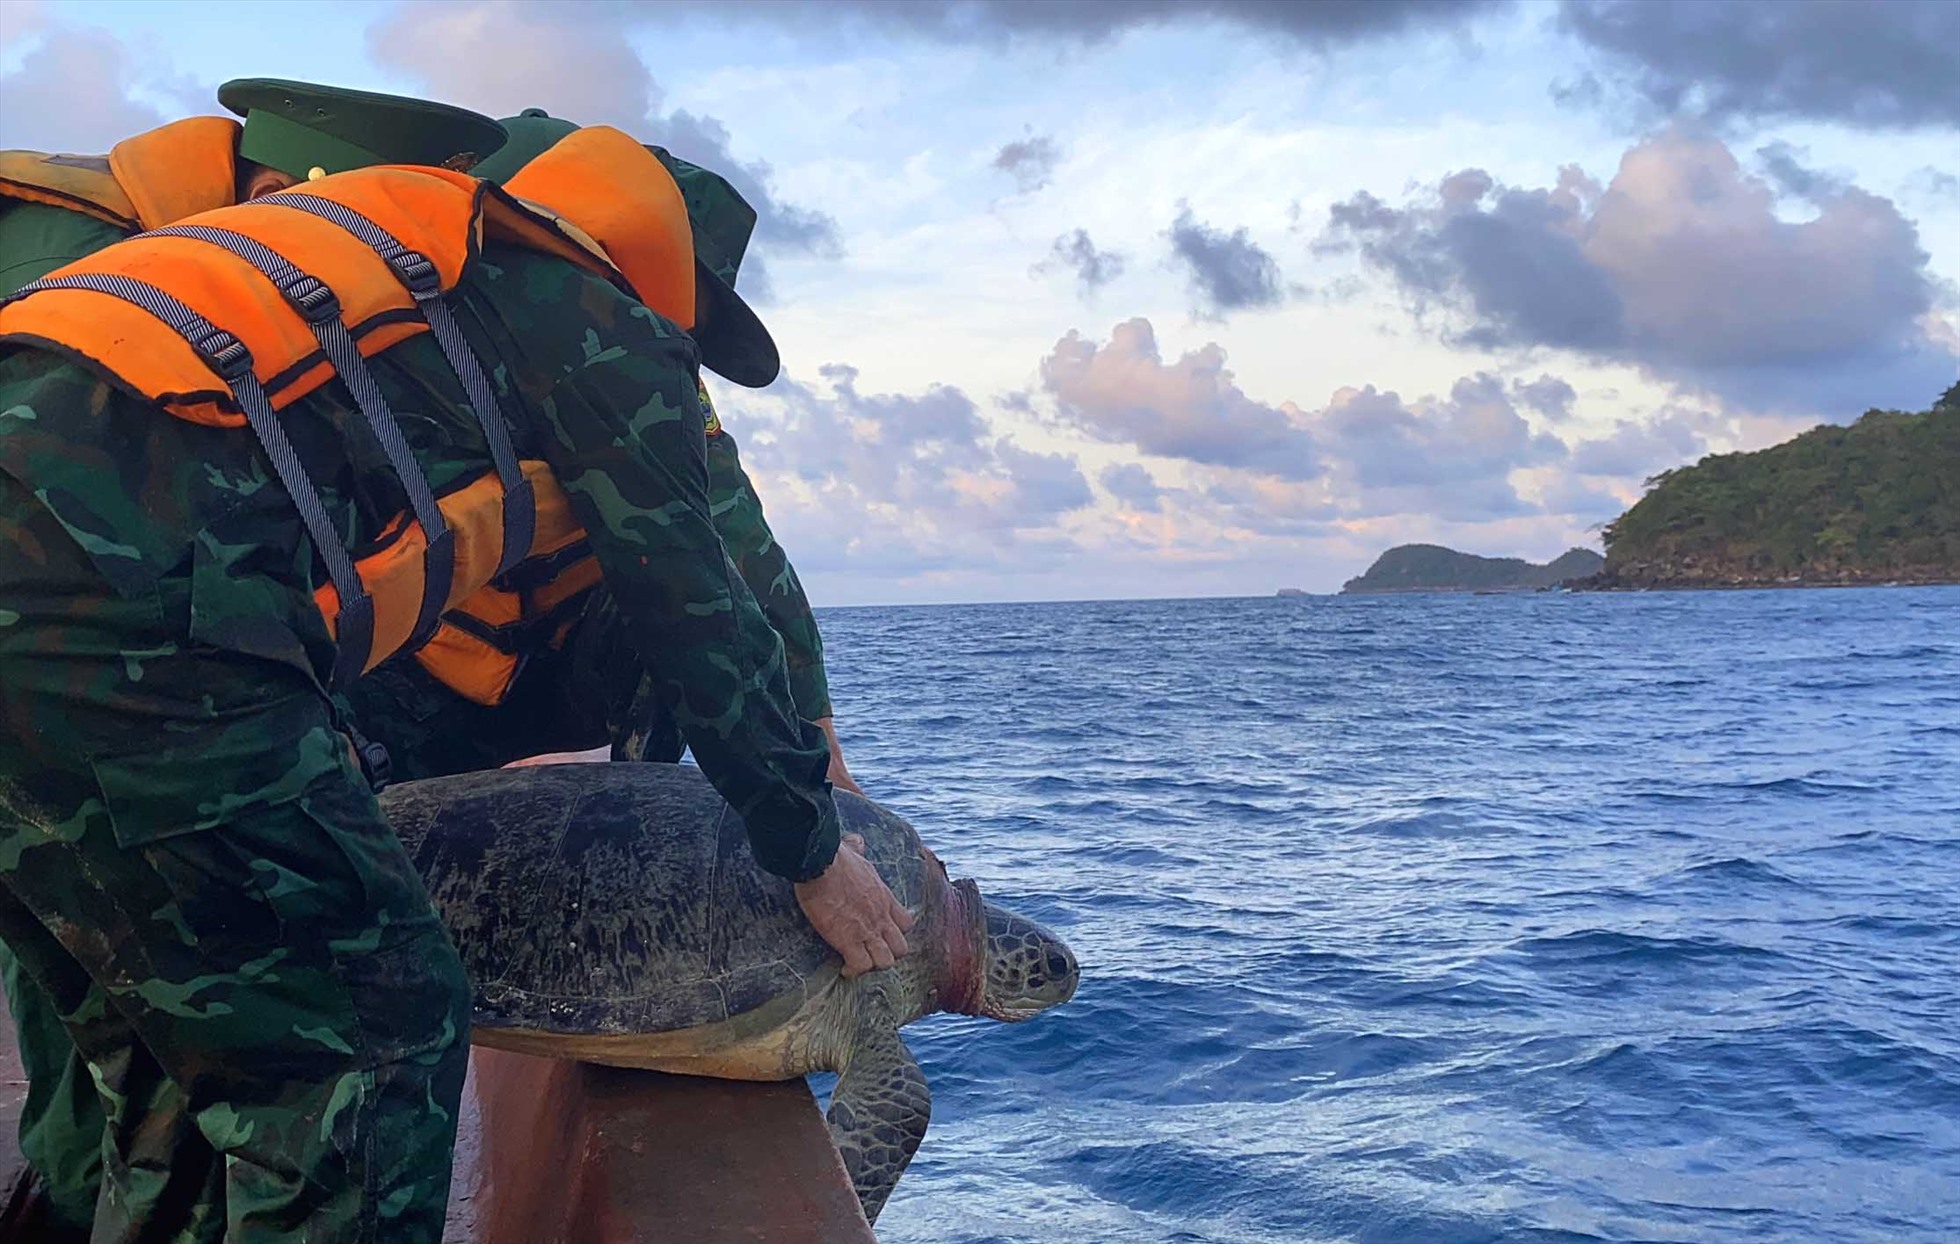 Được vận động, giải thích, ngư dân Nguyễn Hải Đa đã đồng ý phối hợp cùng Bộ đội biên phòng Đồn Thổ Châu thực hiện thả rùa biển về đại dương. Ảnh: La Minh Hoà